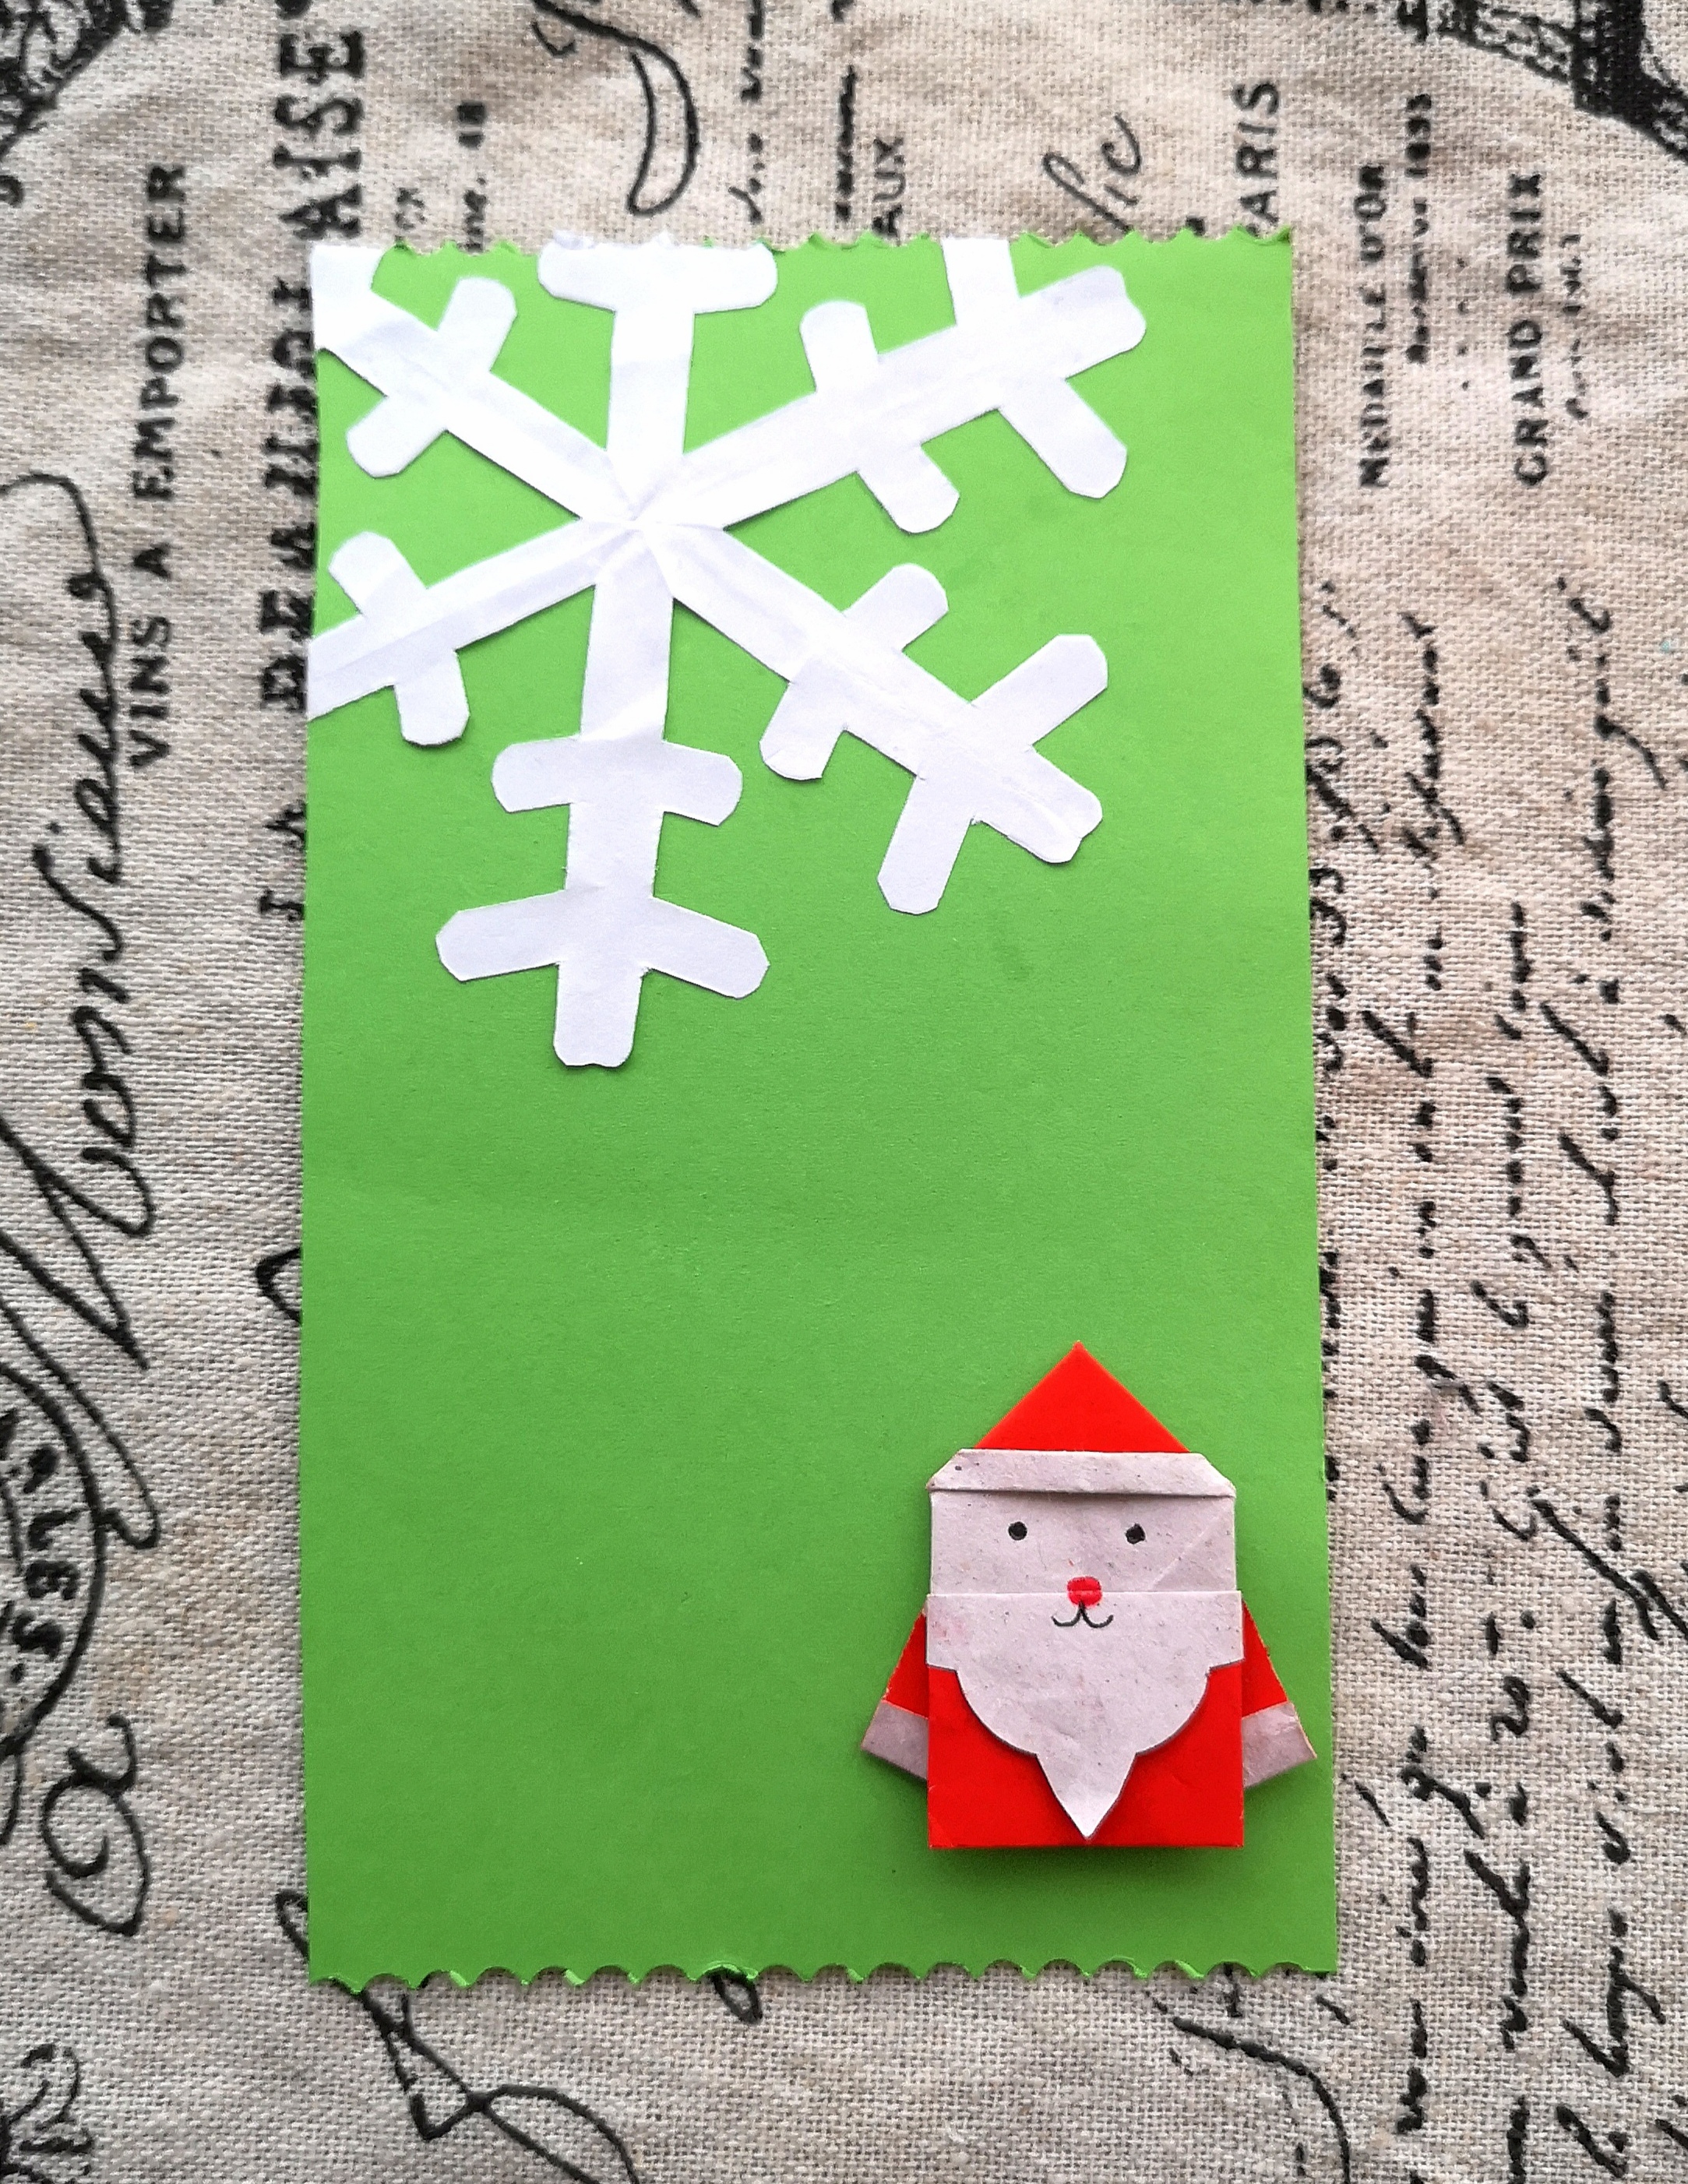 5雪花和圣诞老人一起粘到卡片上,白色圣诞节气氛轻松get!